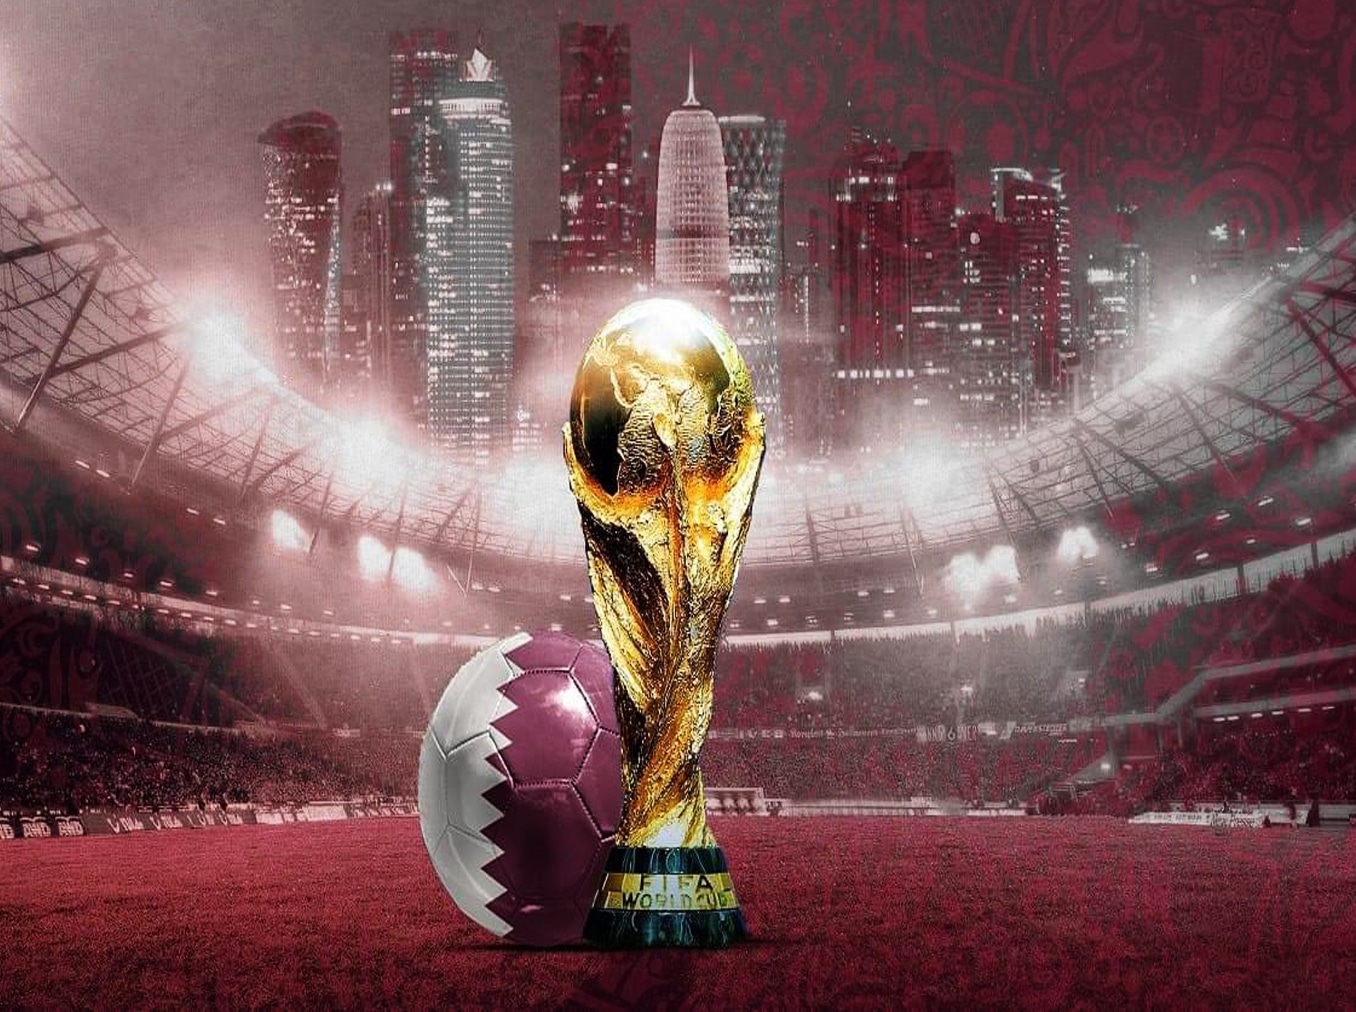 10 أشياء قامت بها قطر في افتتاح كأس العالم